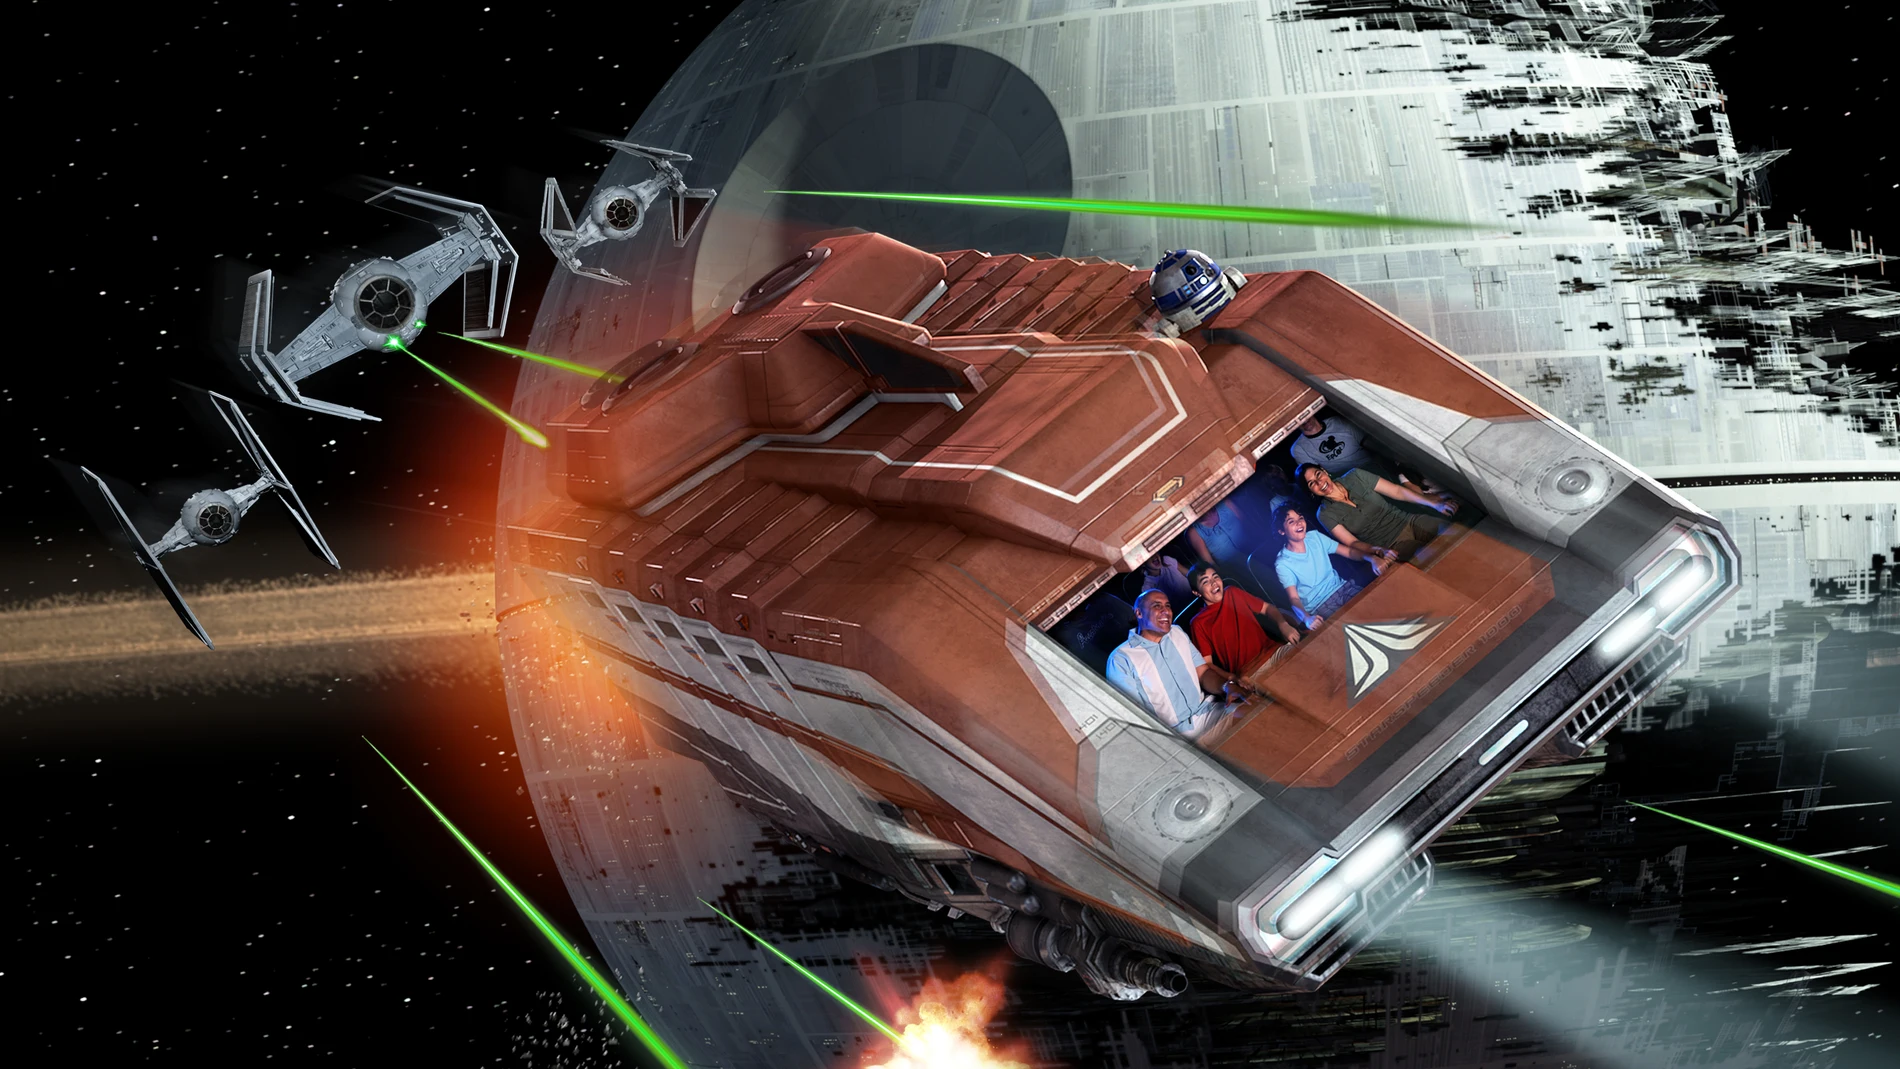 Imagen de una de las atracciones de Disney inspirada en la saga Star Wars